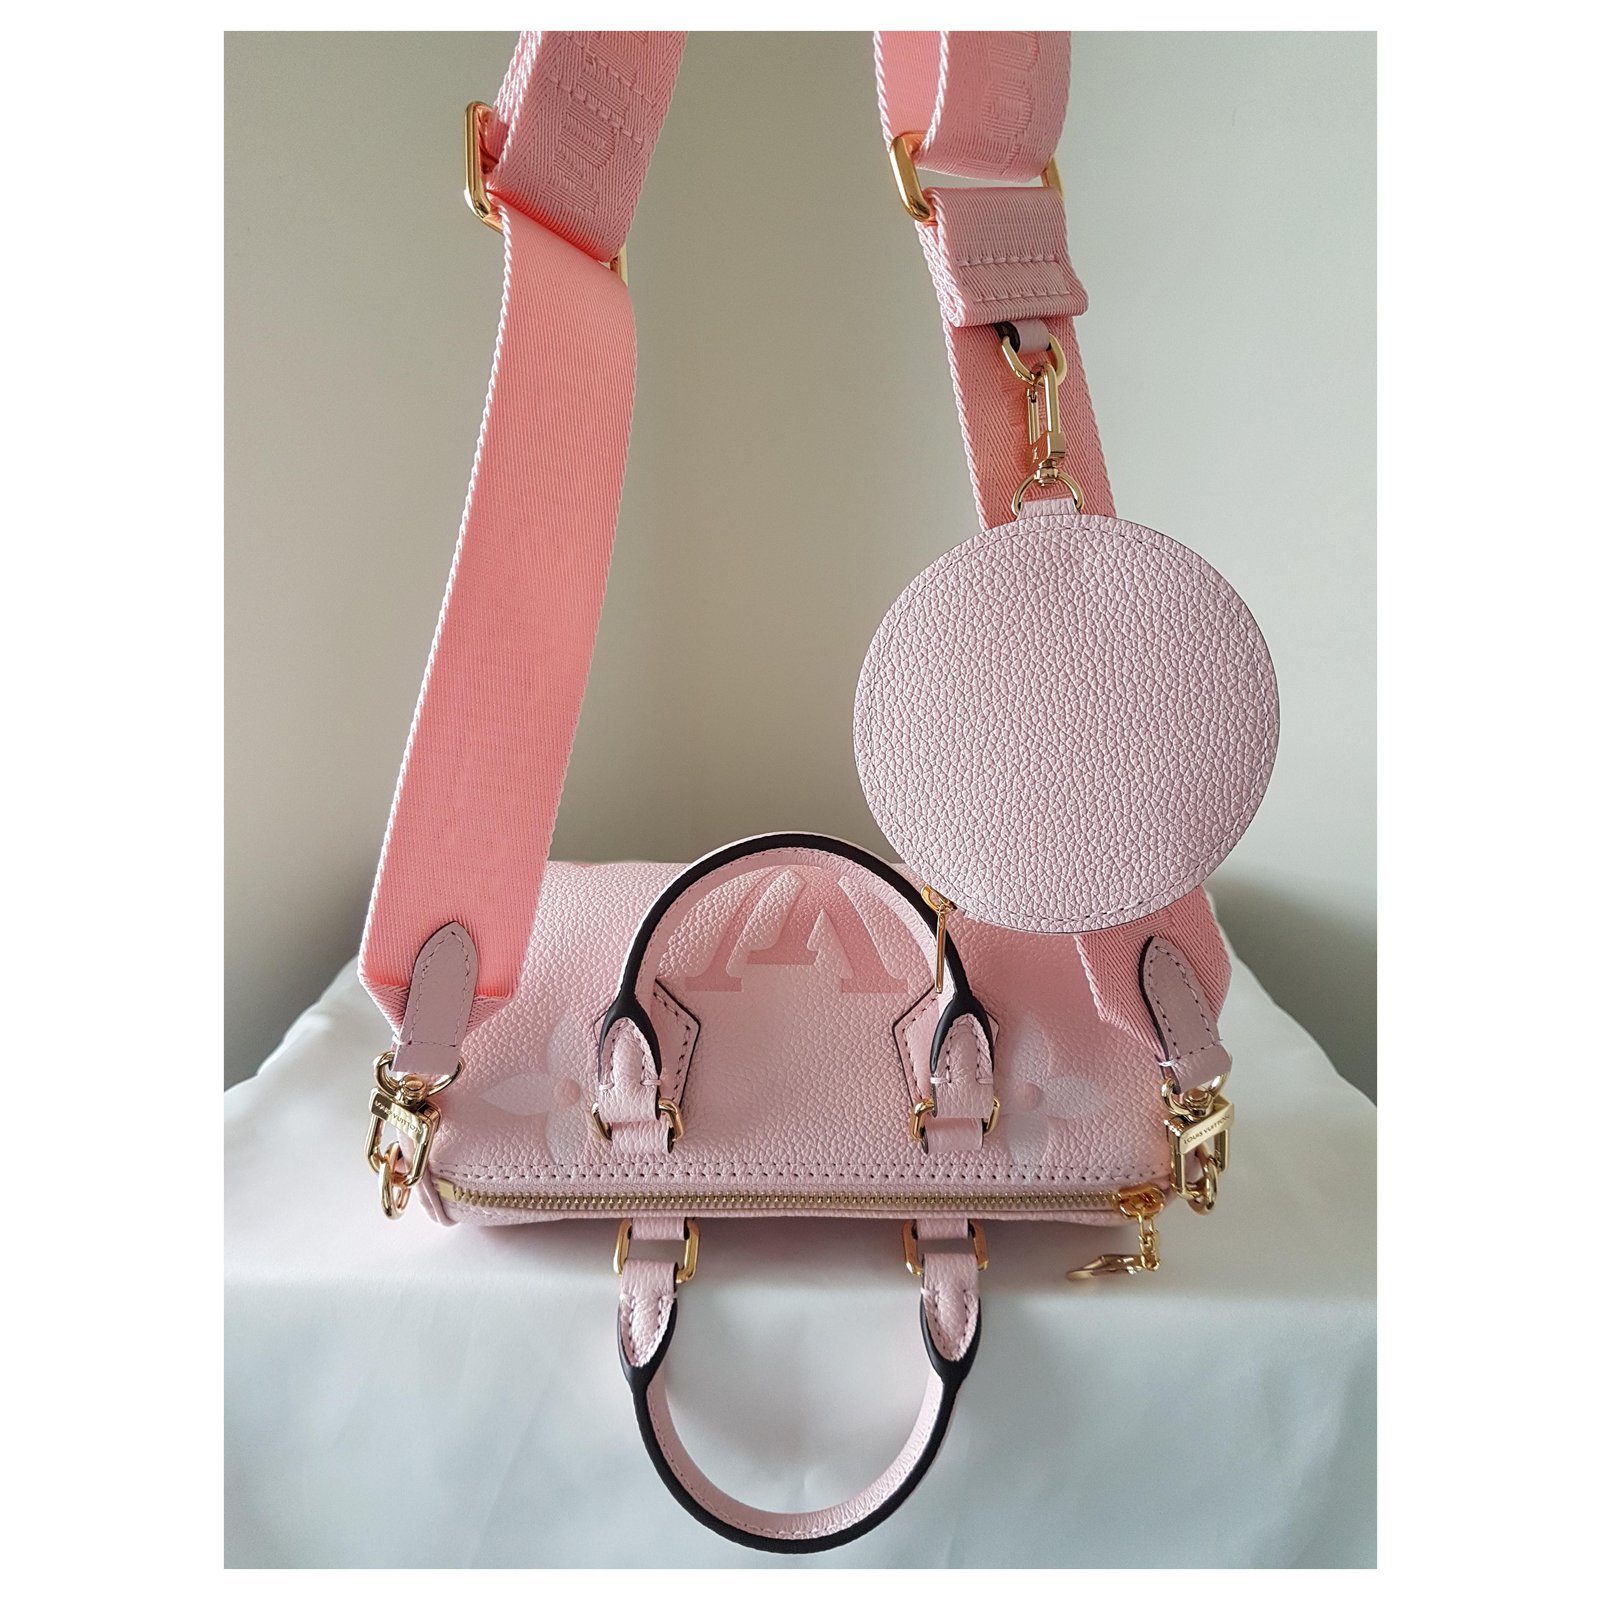 Louis Vuitton Papillon BB Bag – ZAK BAGS ©️